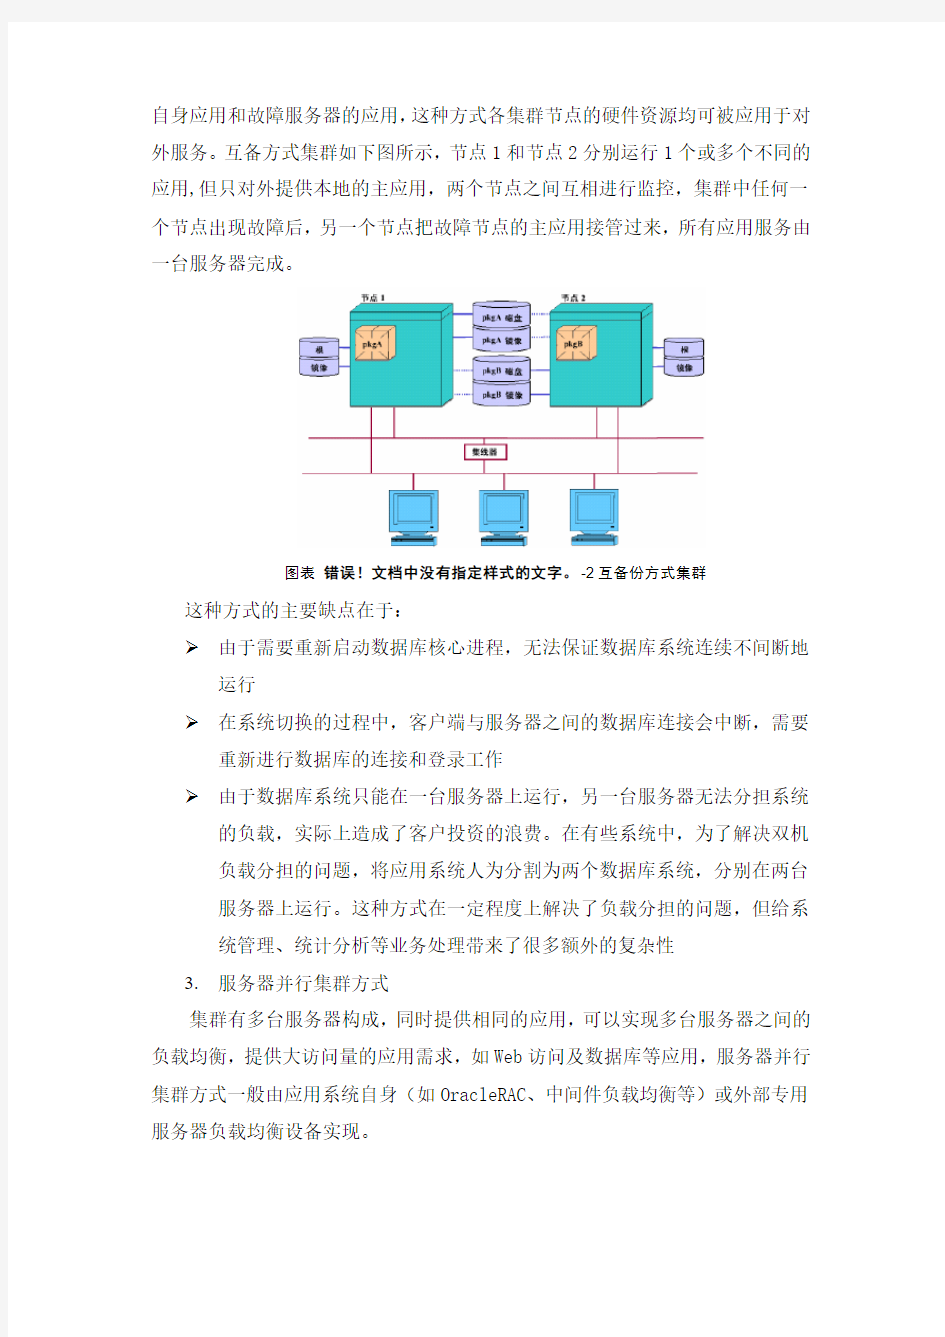 服务器集群技术方案(1)